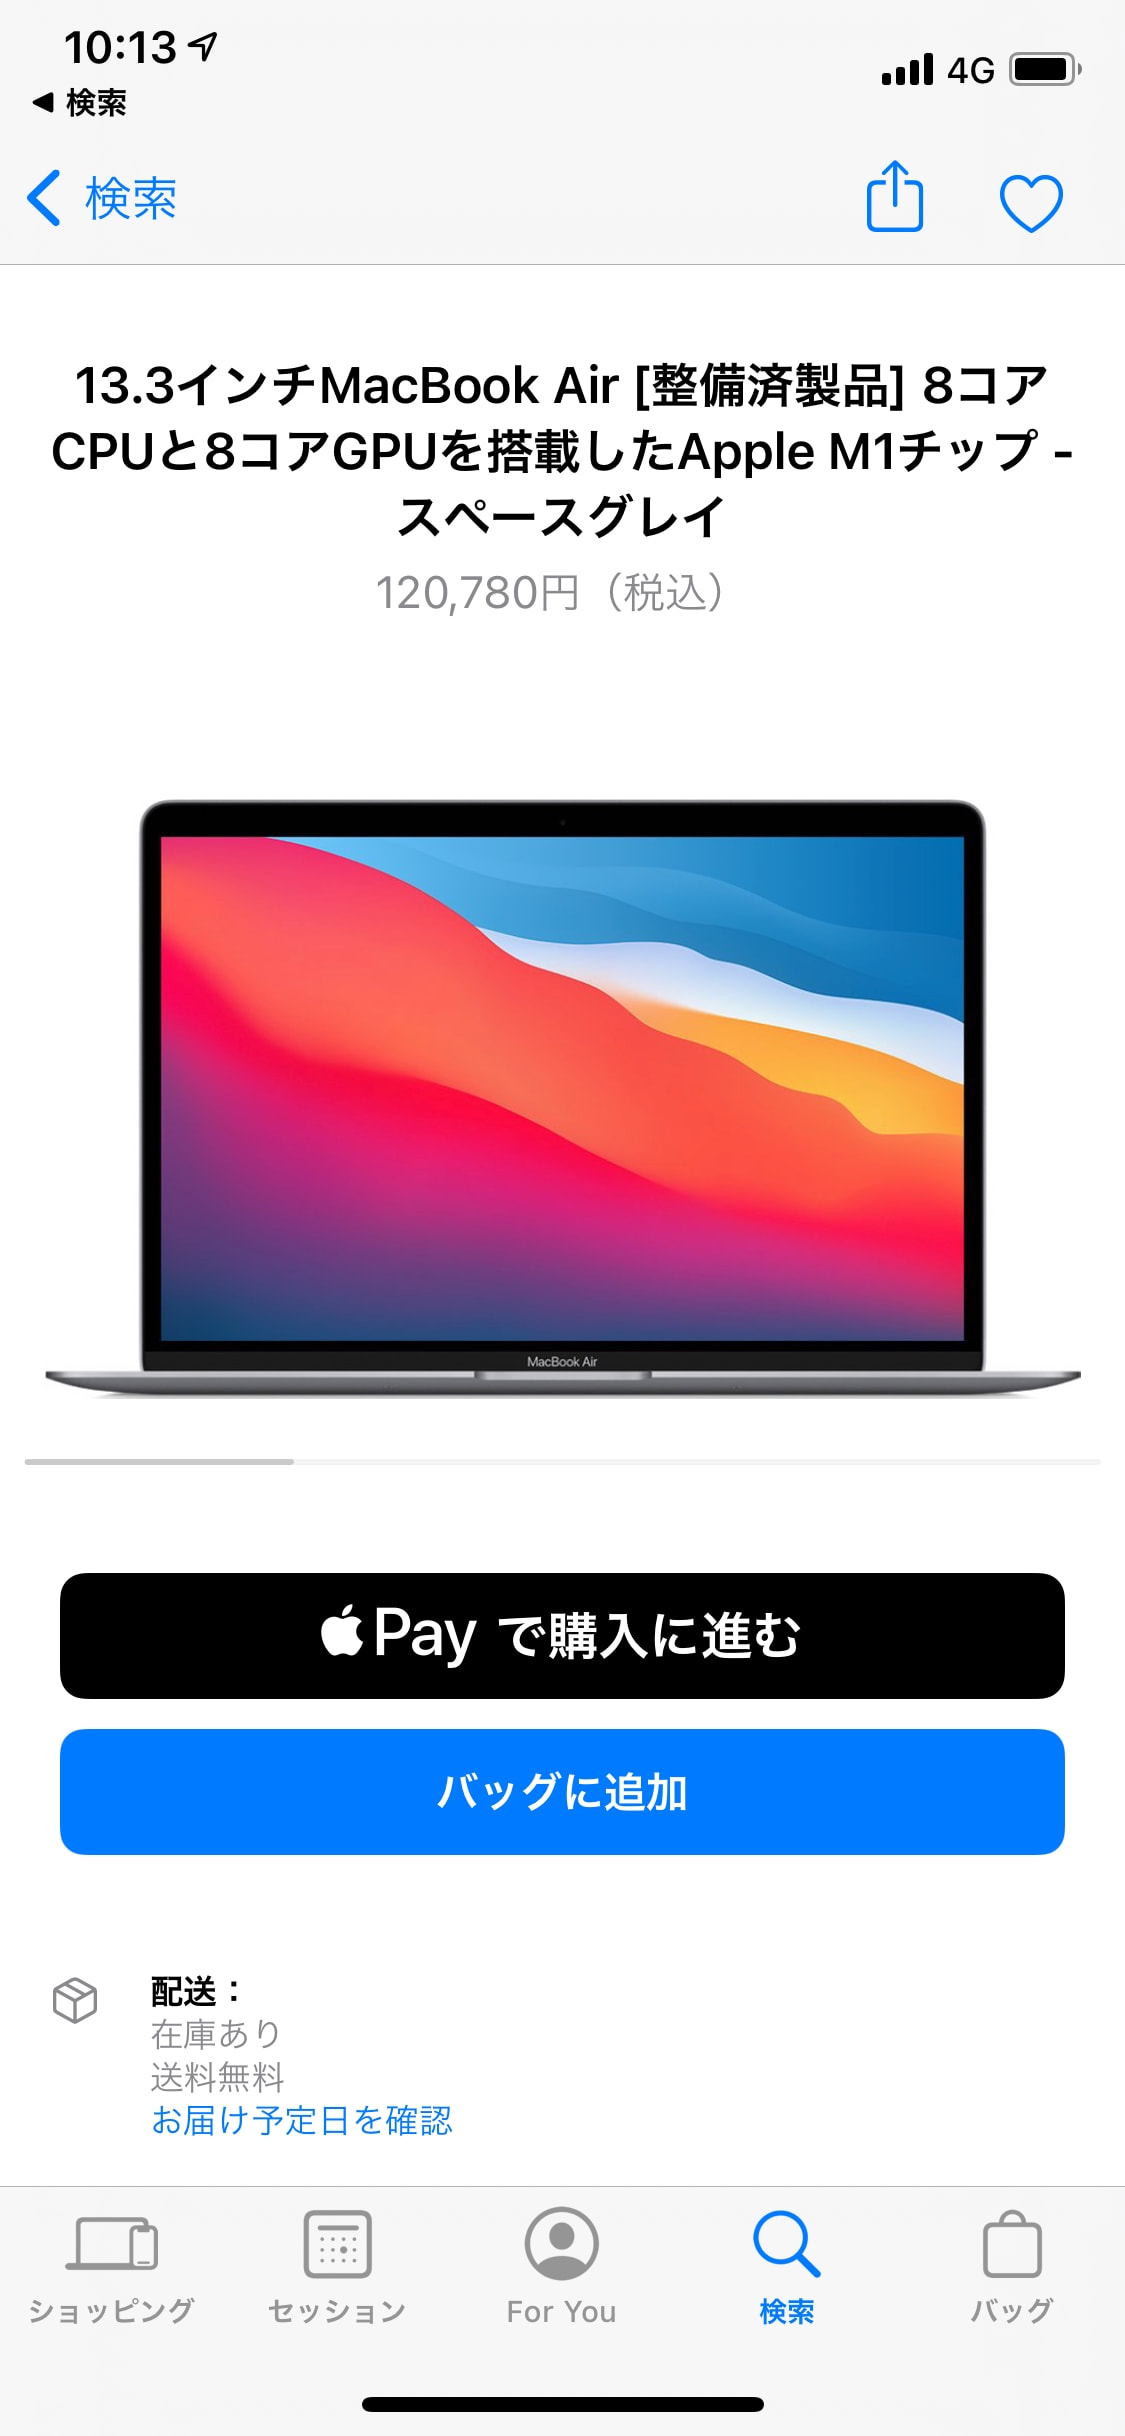 MacBook Air M1 2020 on Apple Store